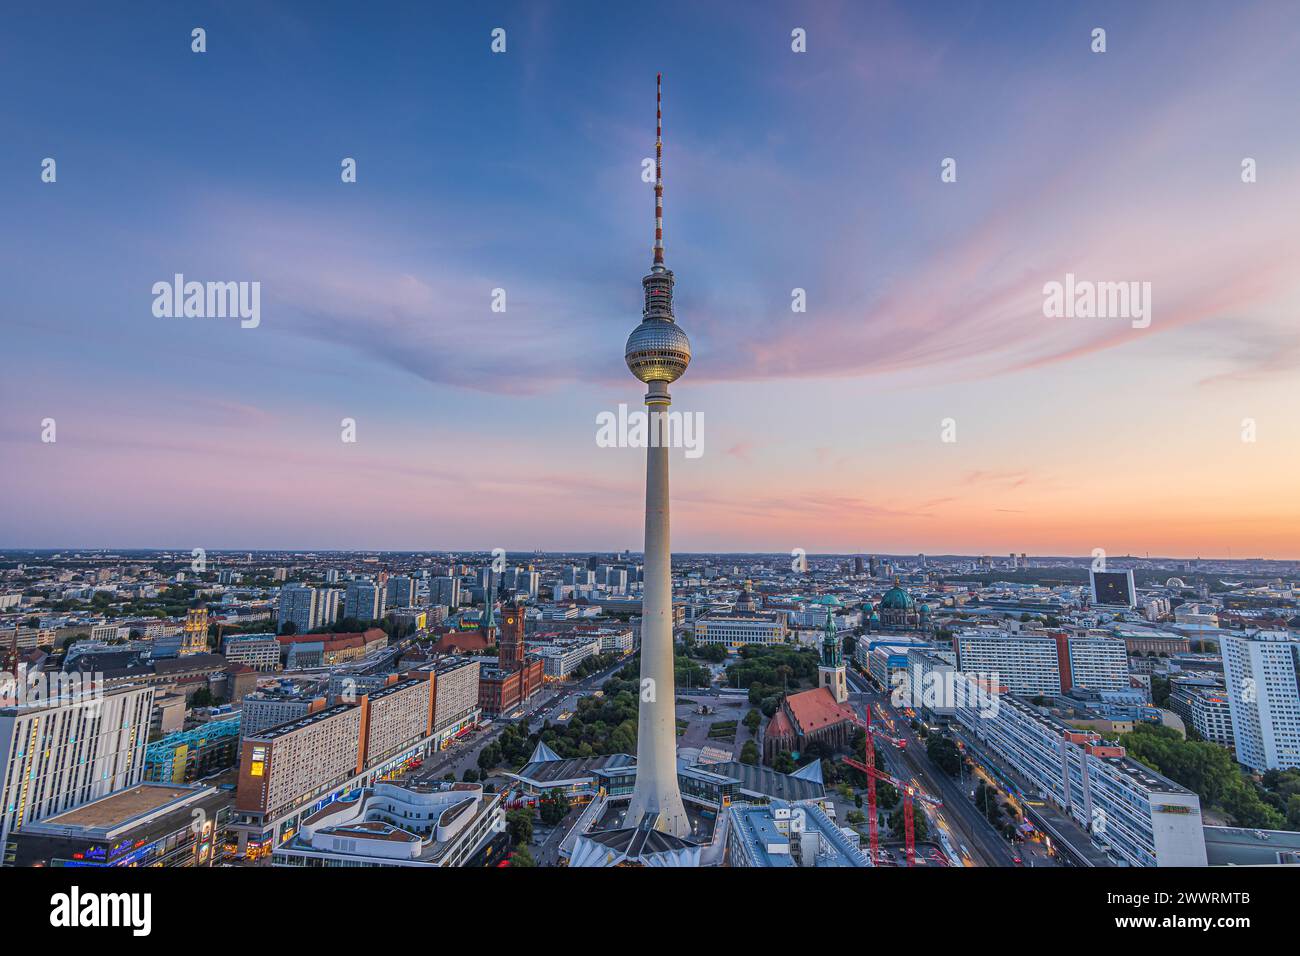 Sonnenuntergang in Berlin mit wenigen Wolken. Skyline der Hauptstadt Deutschlands im Zentrum der Stadt. Blick auf den Fernsehturm am Alexanderplatz Stockfoto